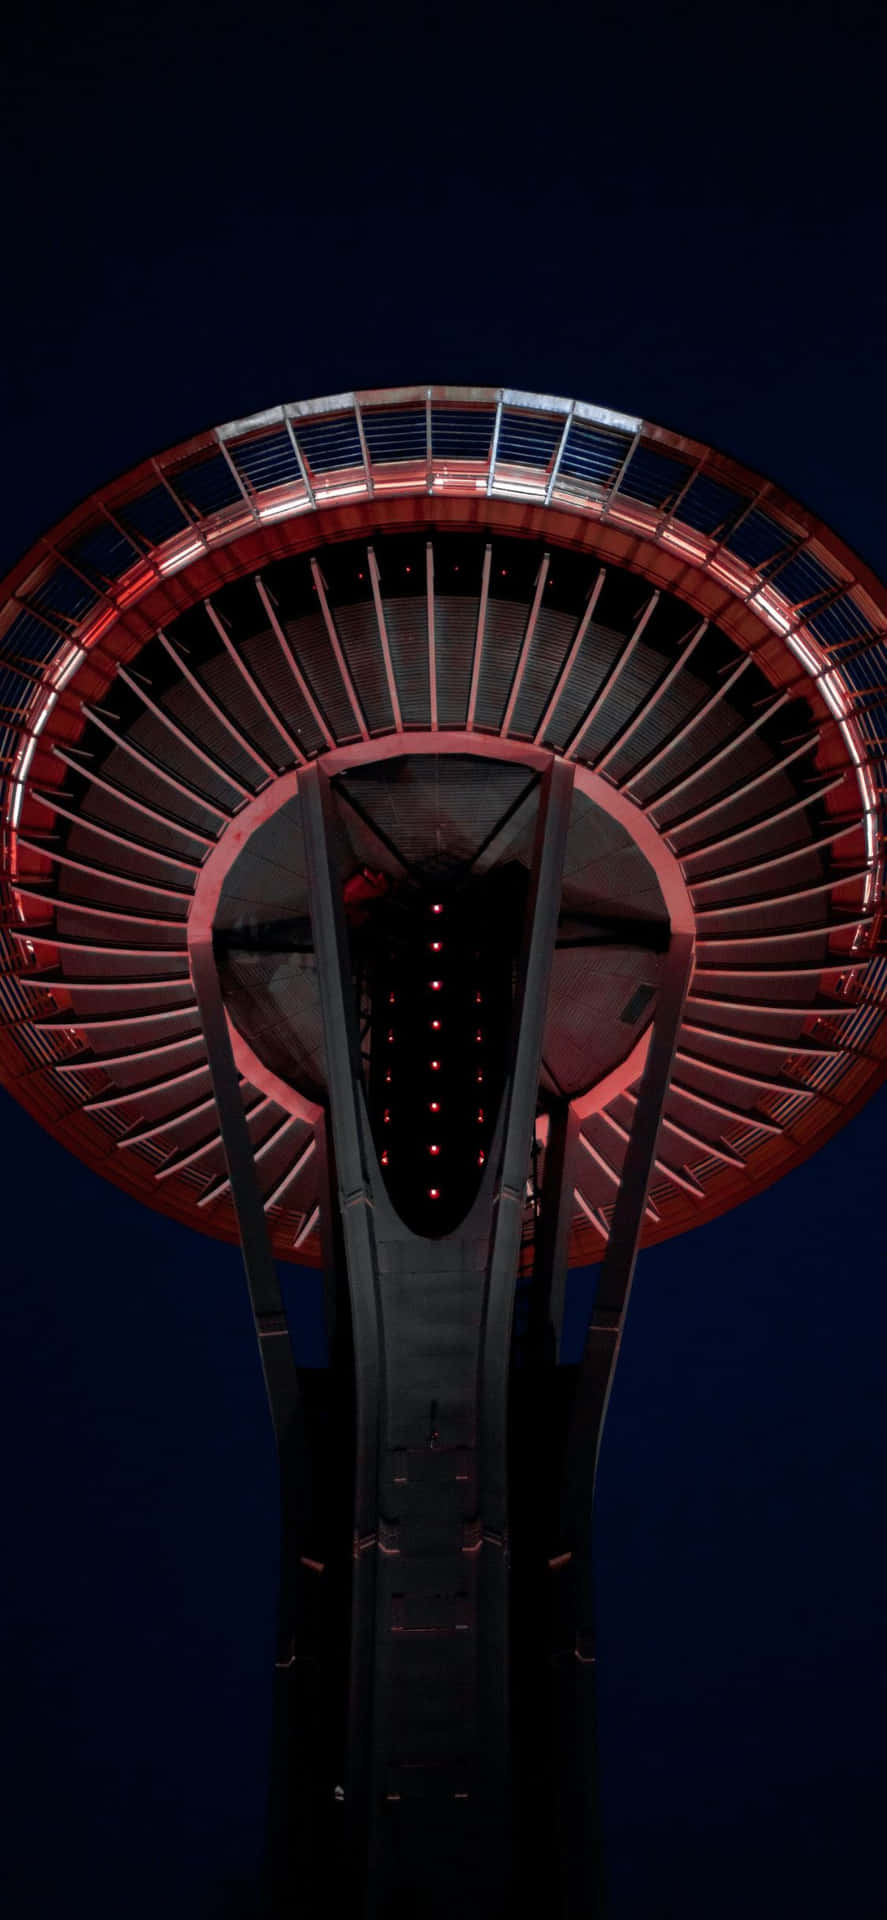 Udforsk Seattle i stil med et IPhone X Tapet